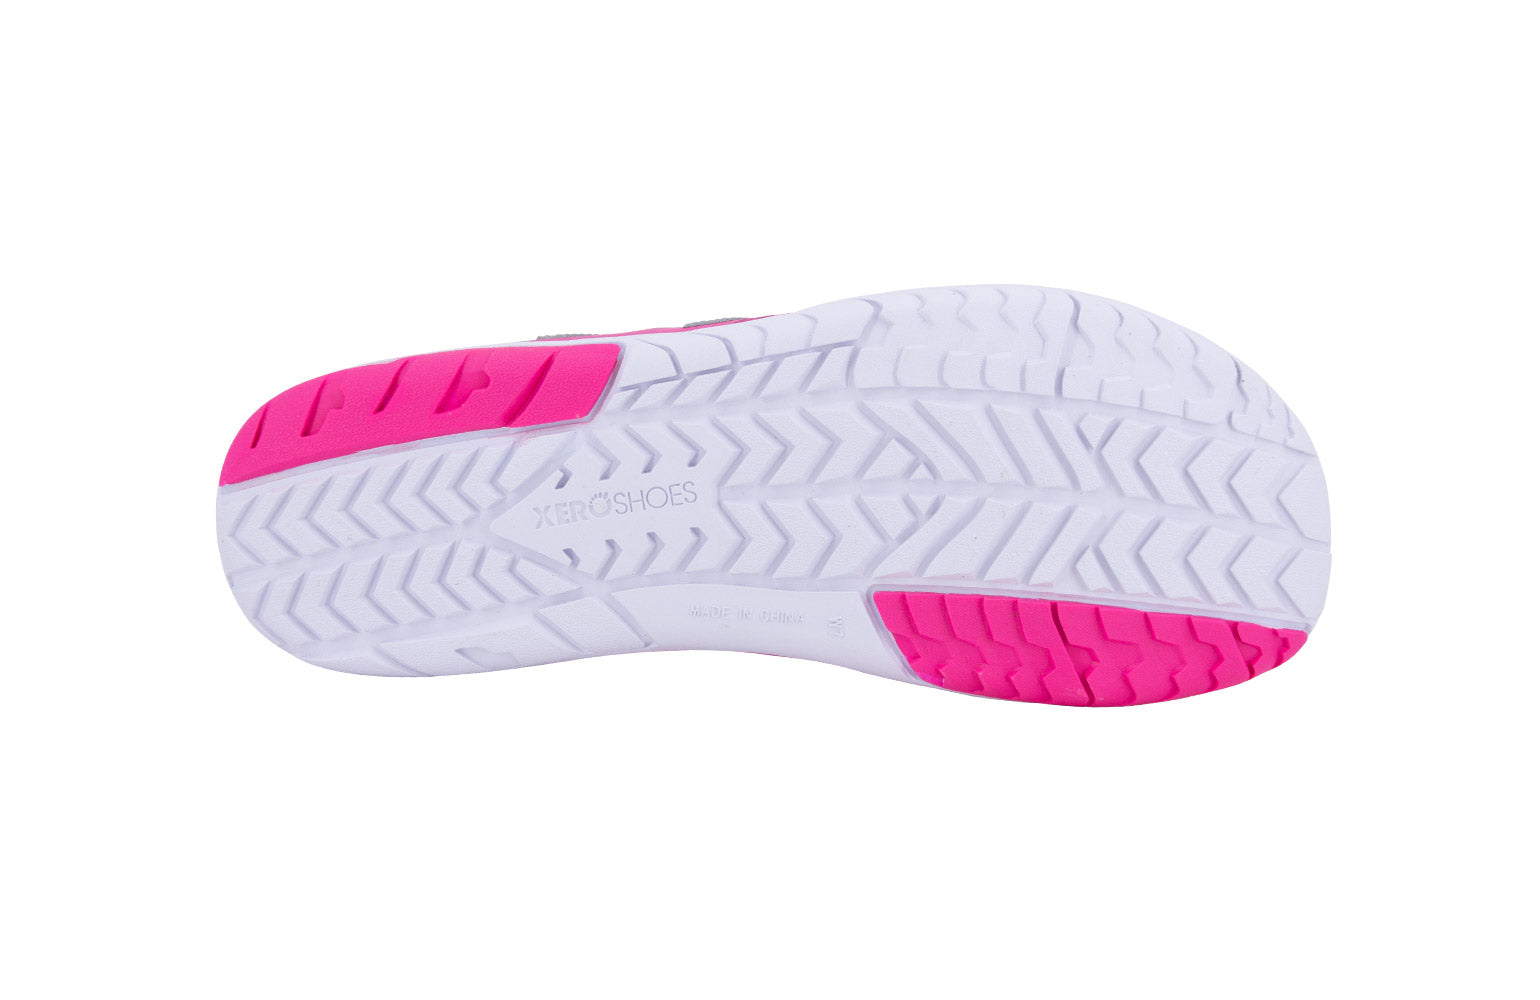 Xero Shoes HFS Womens barfods træningssko/løbesko til kvinder i farven pink glow, saal